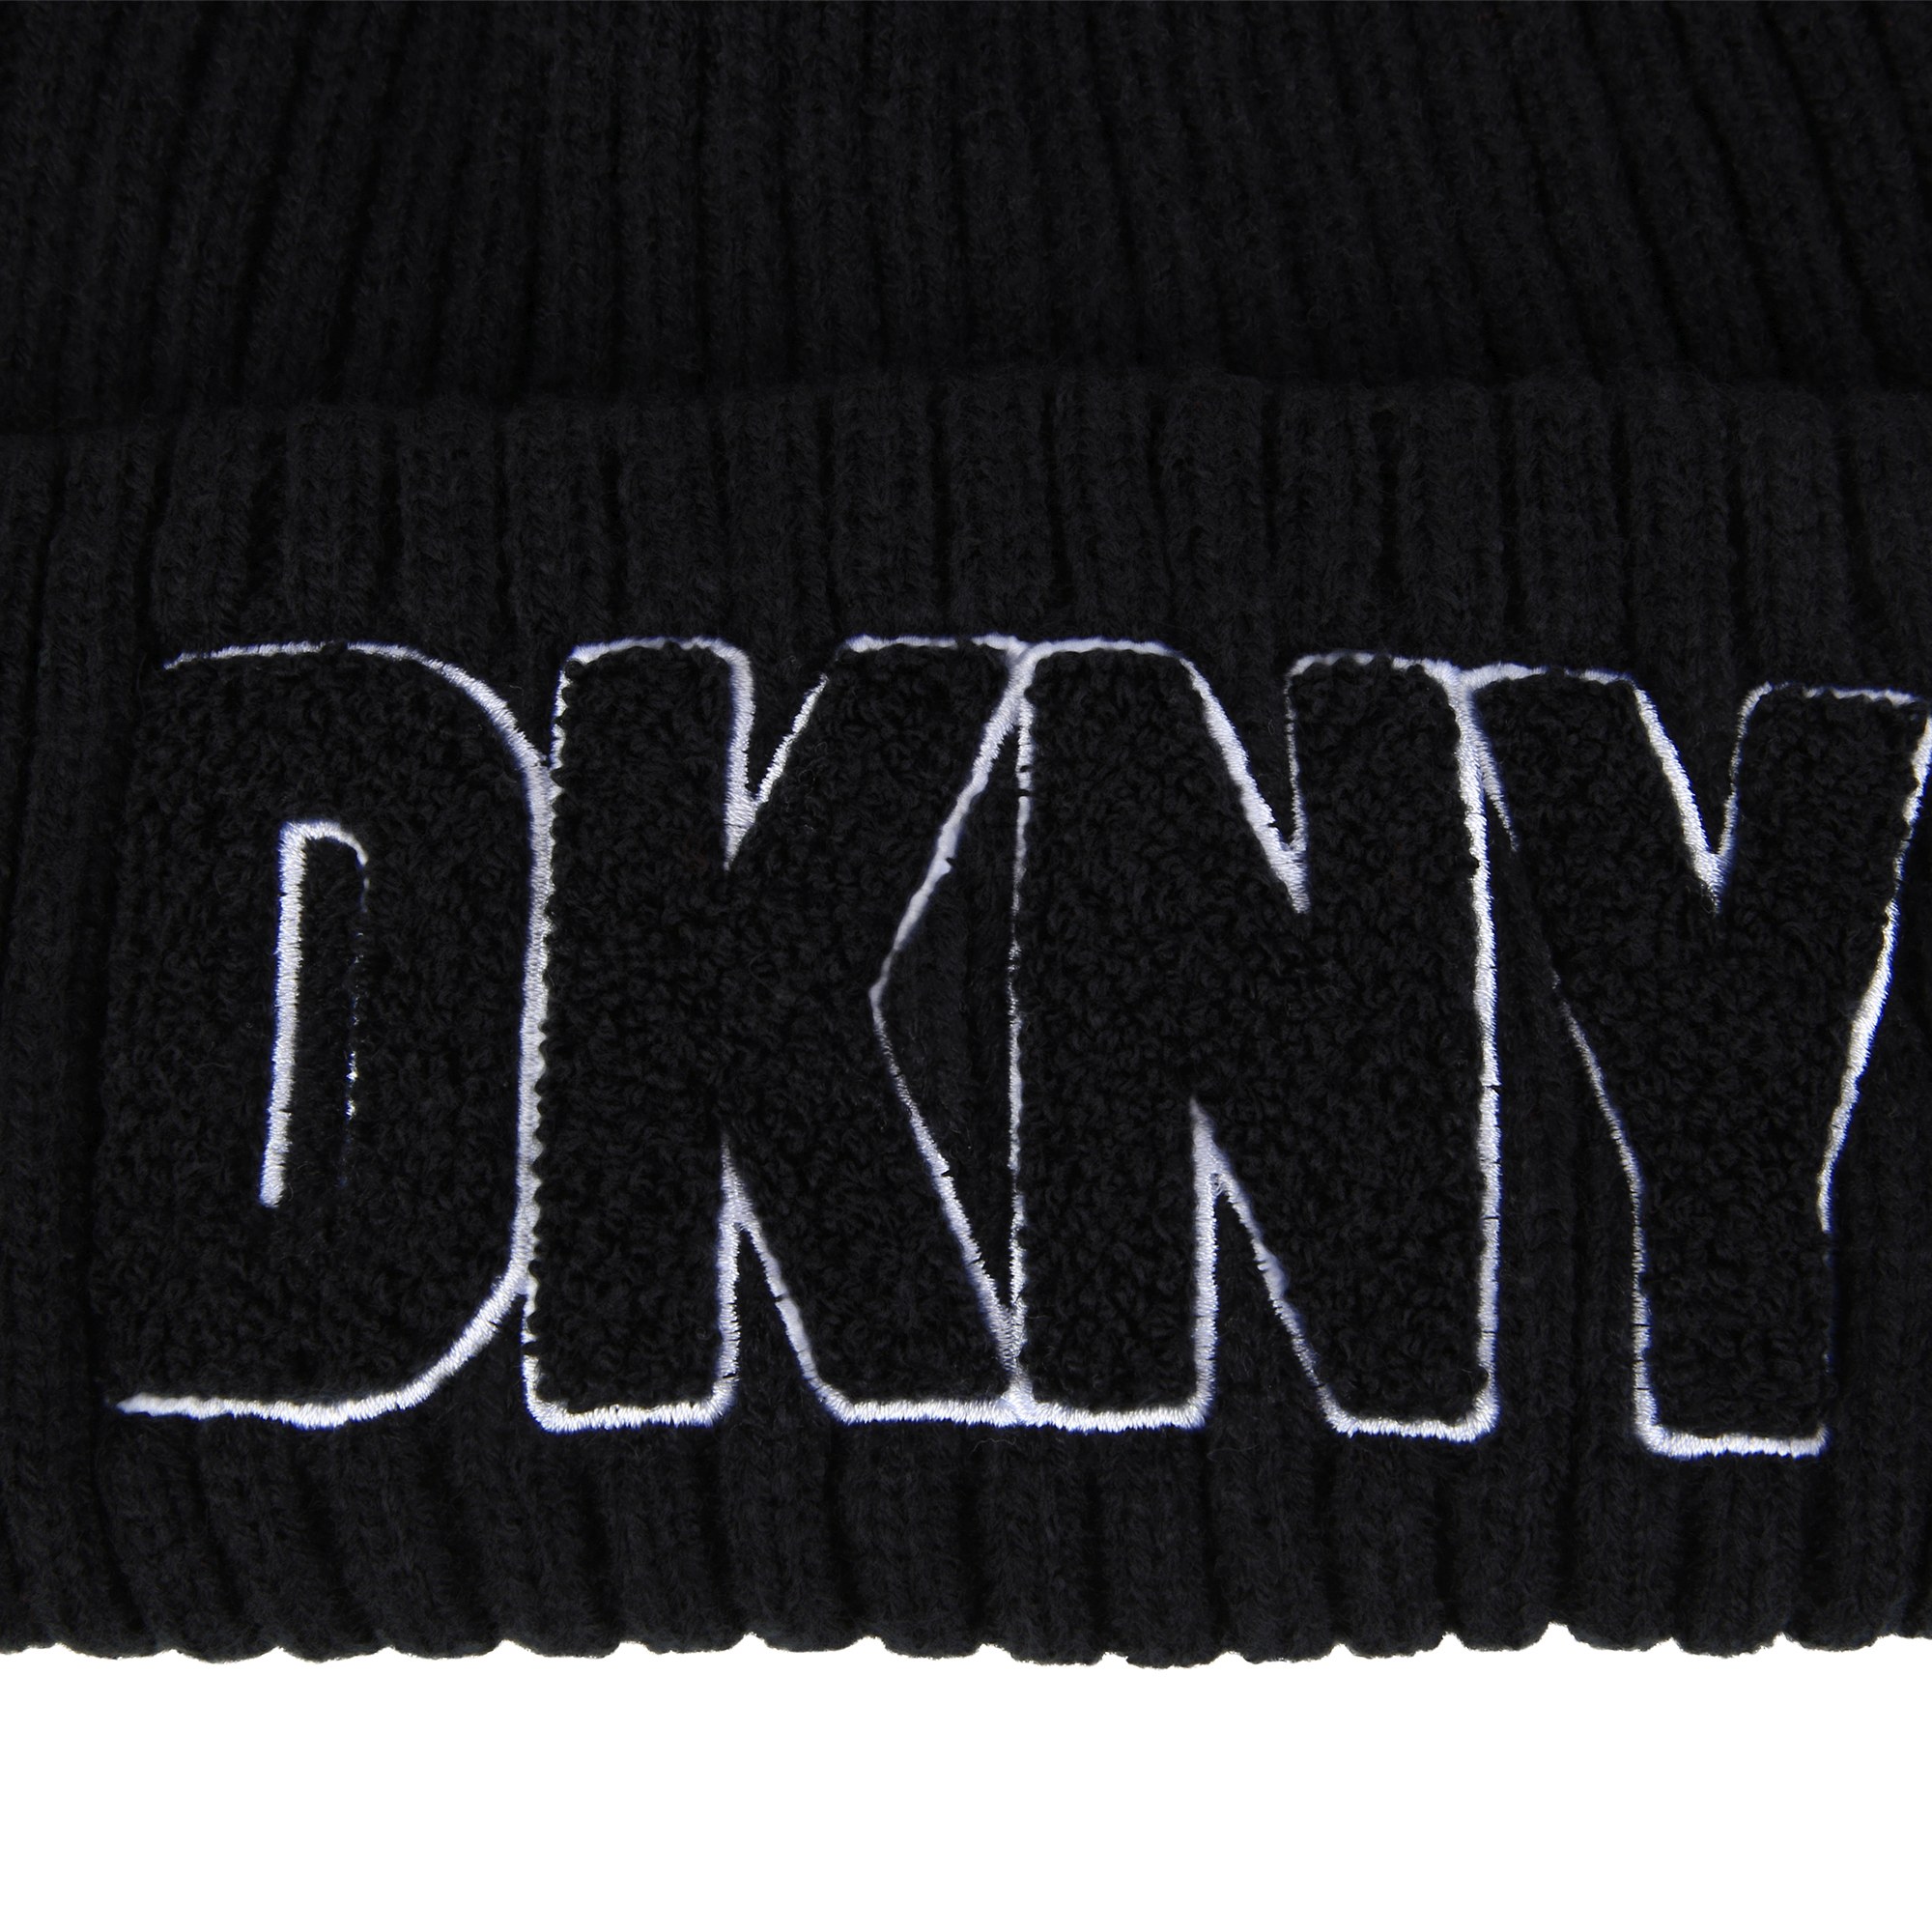 Cappellino lavorato a maglia DKNY Per UNISEX